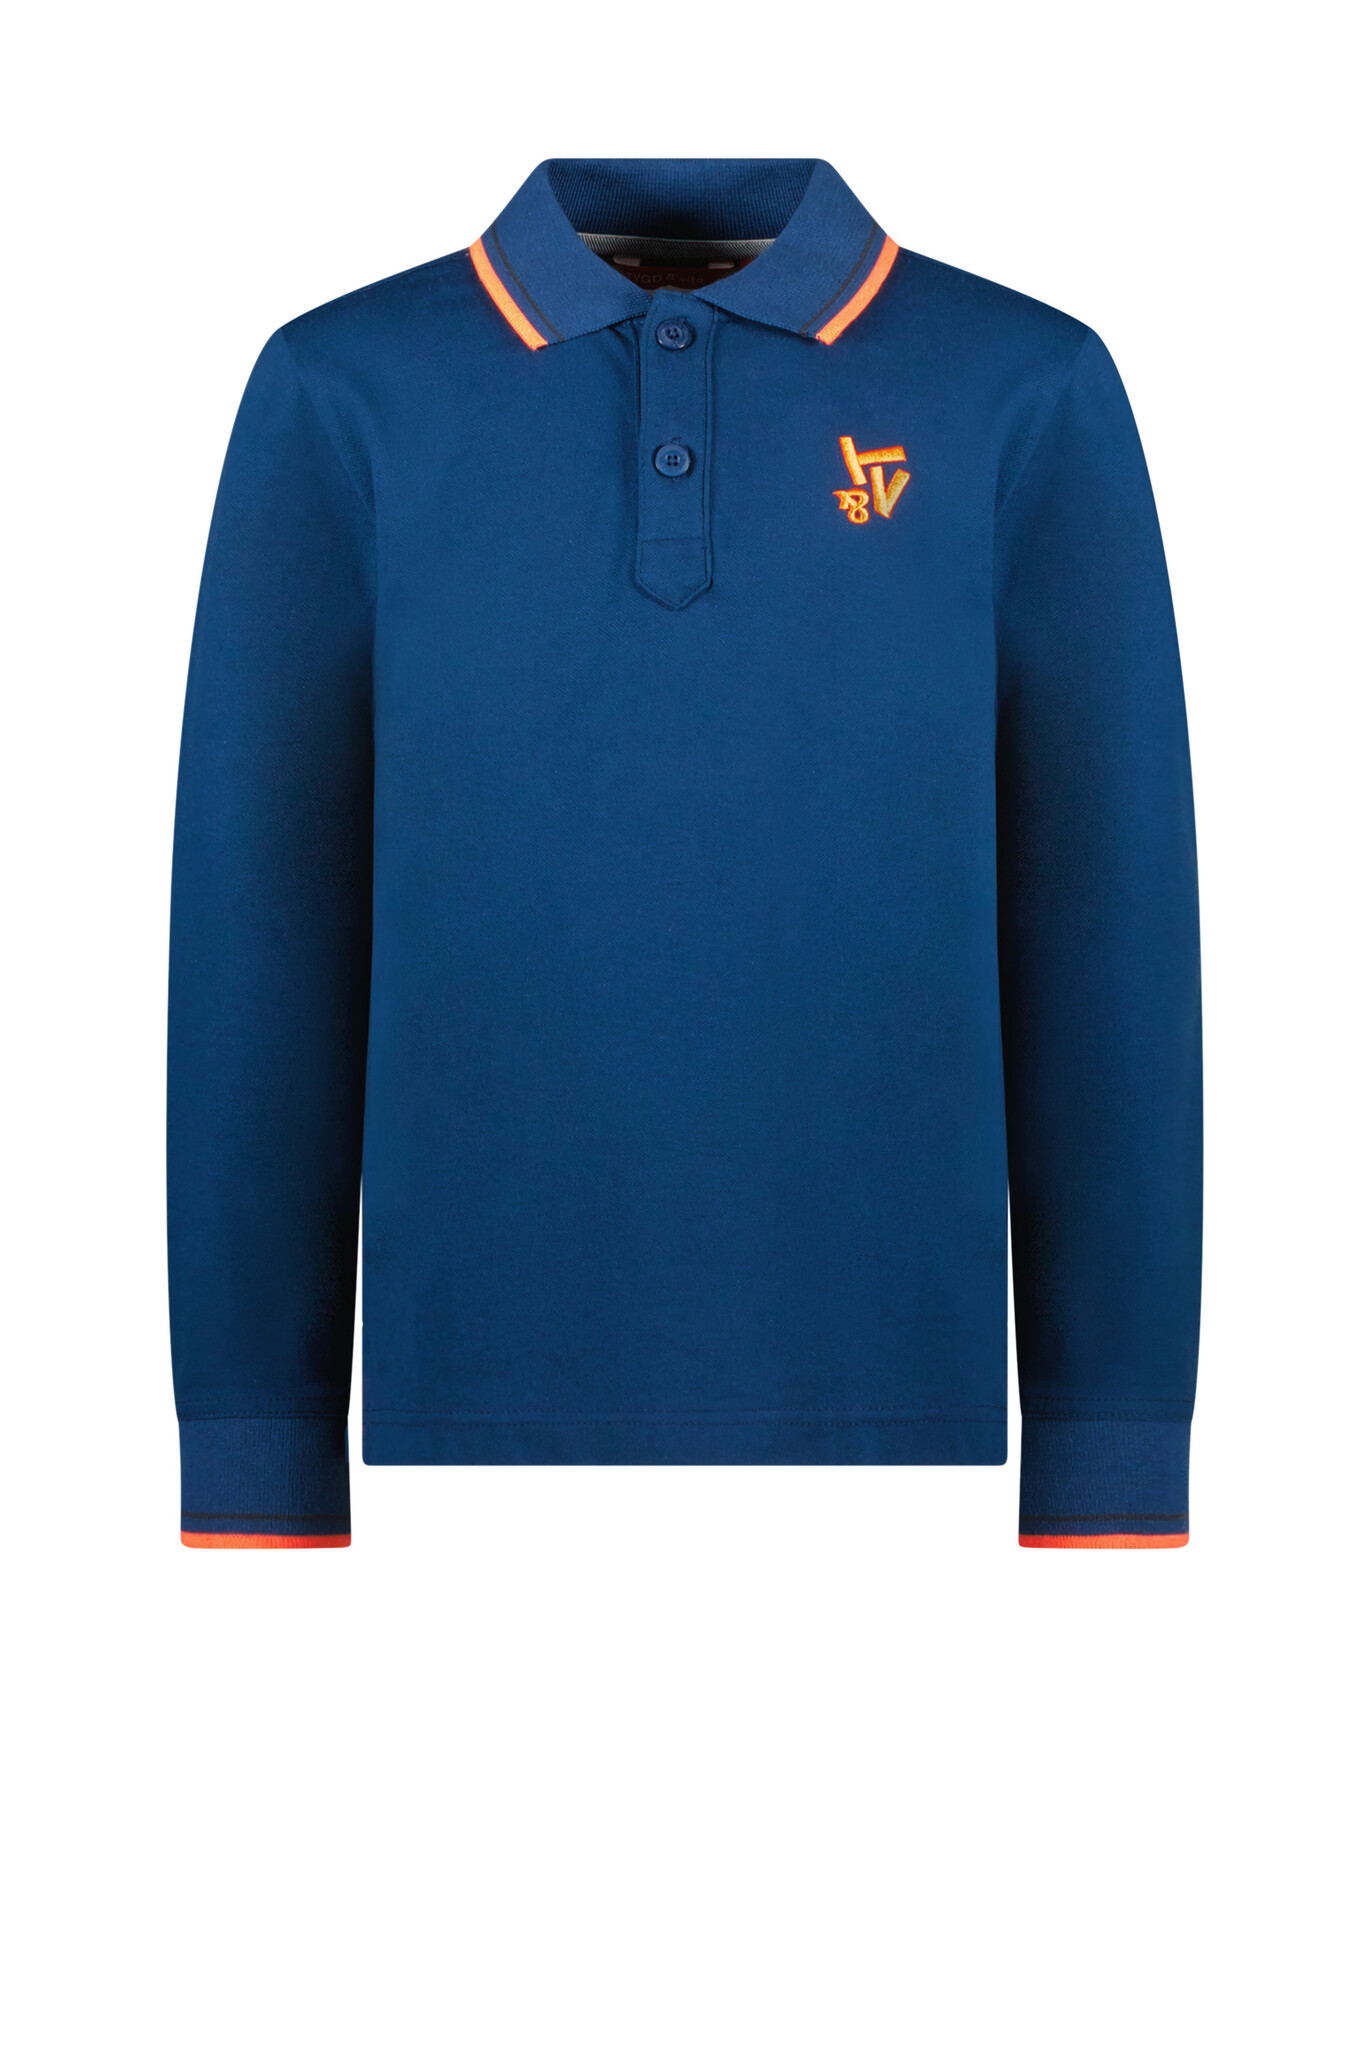 Tygo & Vito Jongens polo shirt - Milano - Sporty blauw